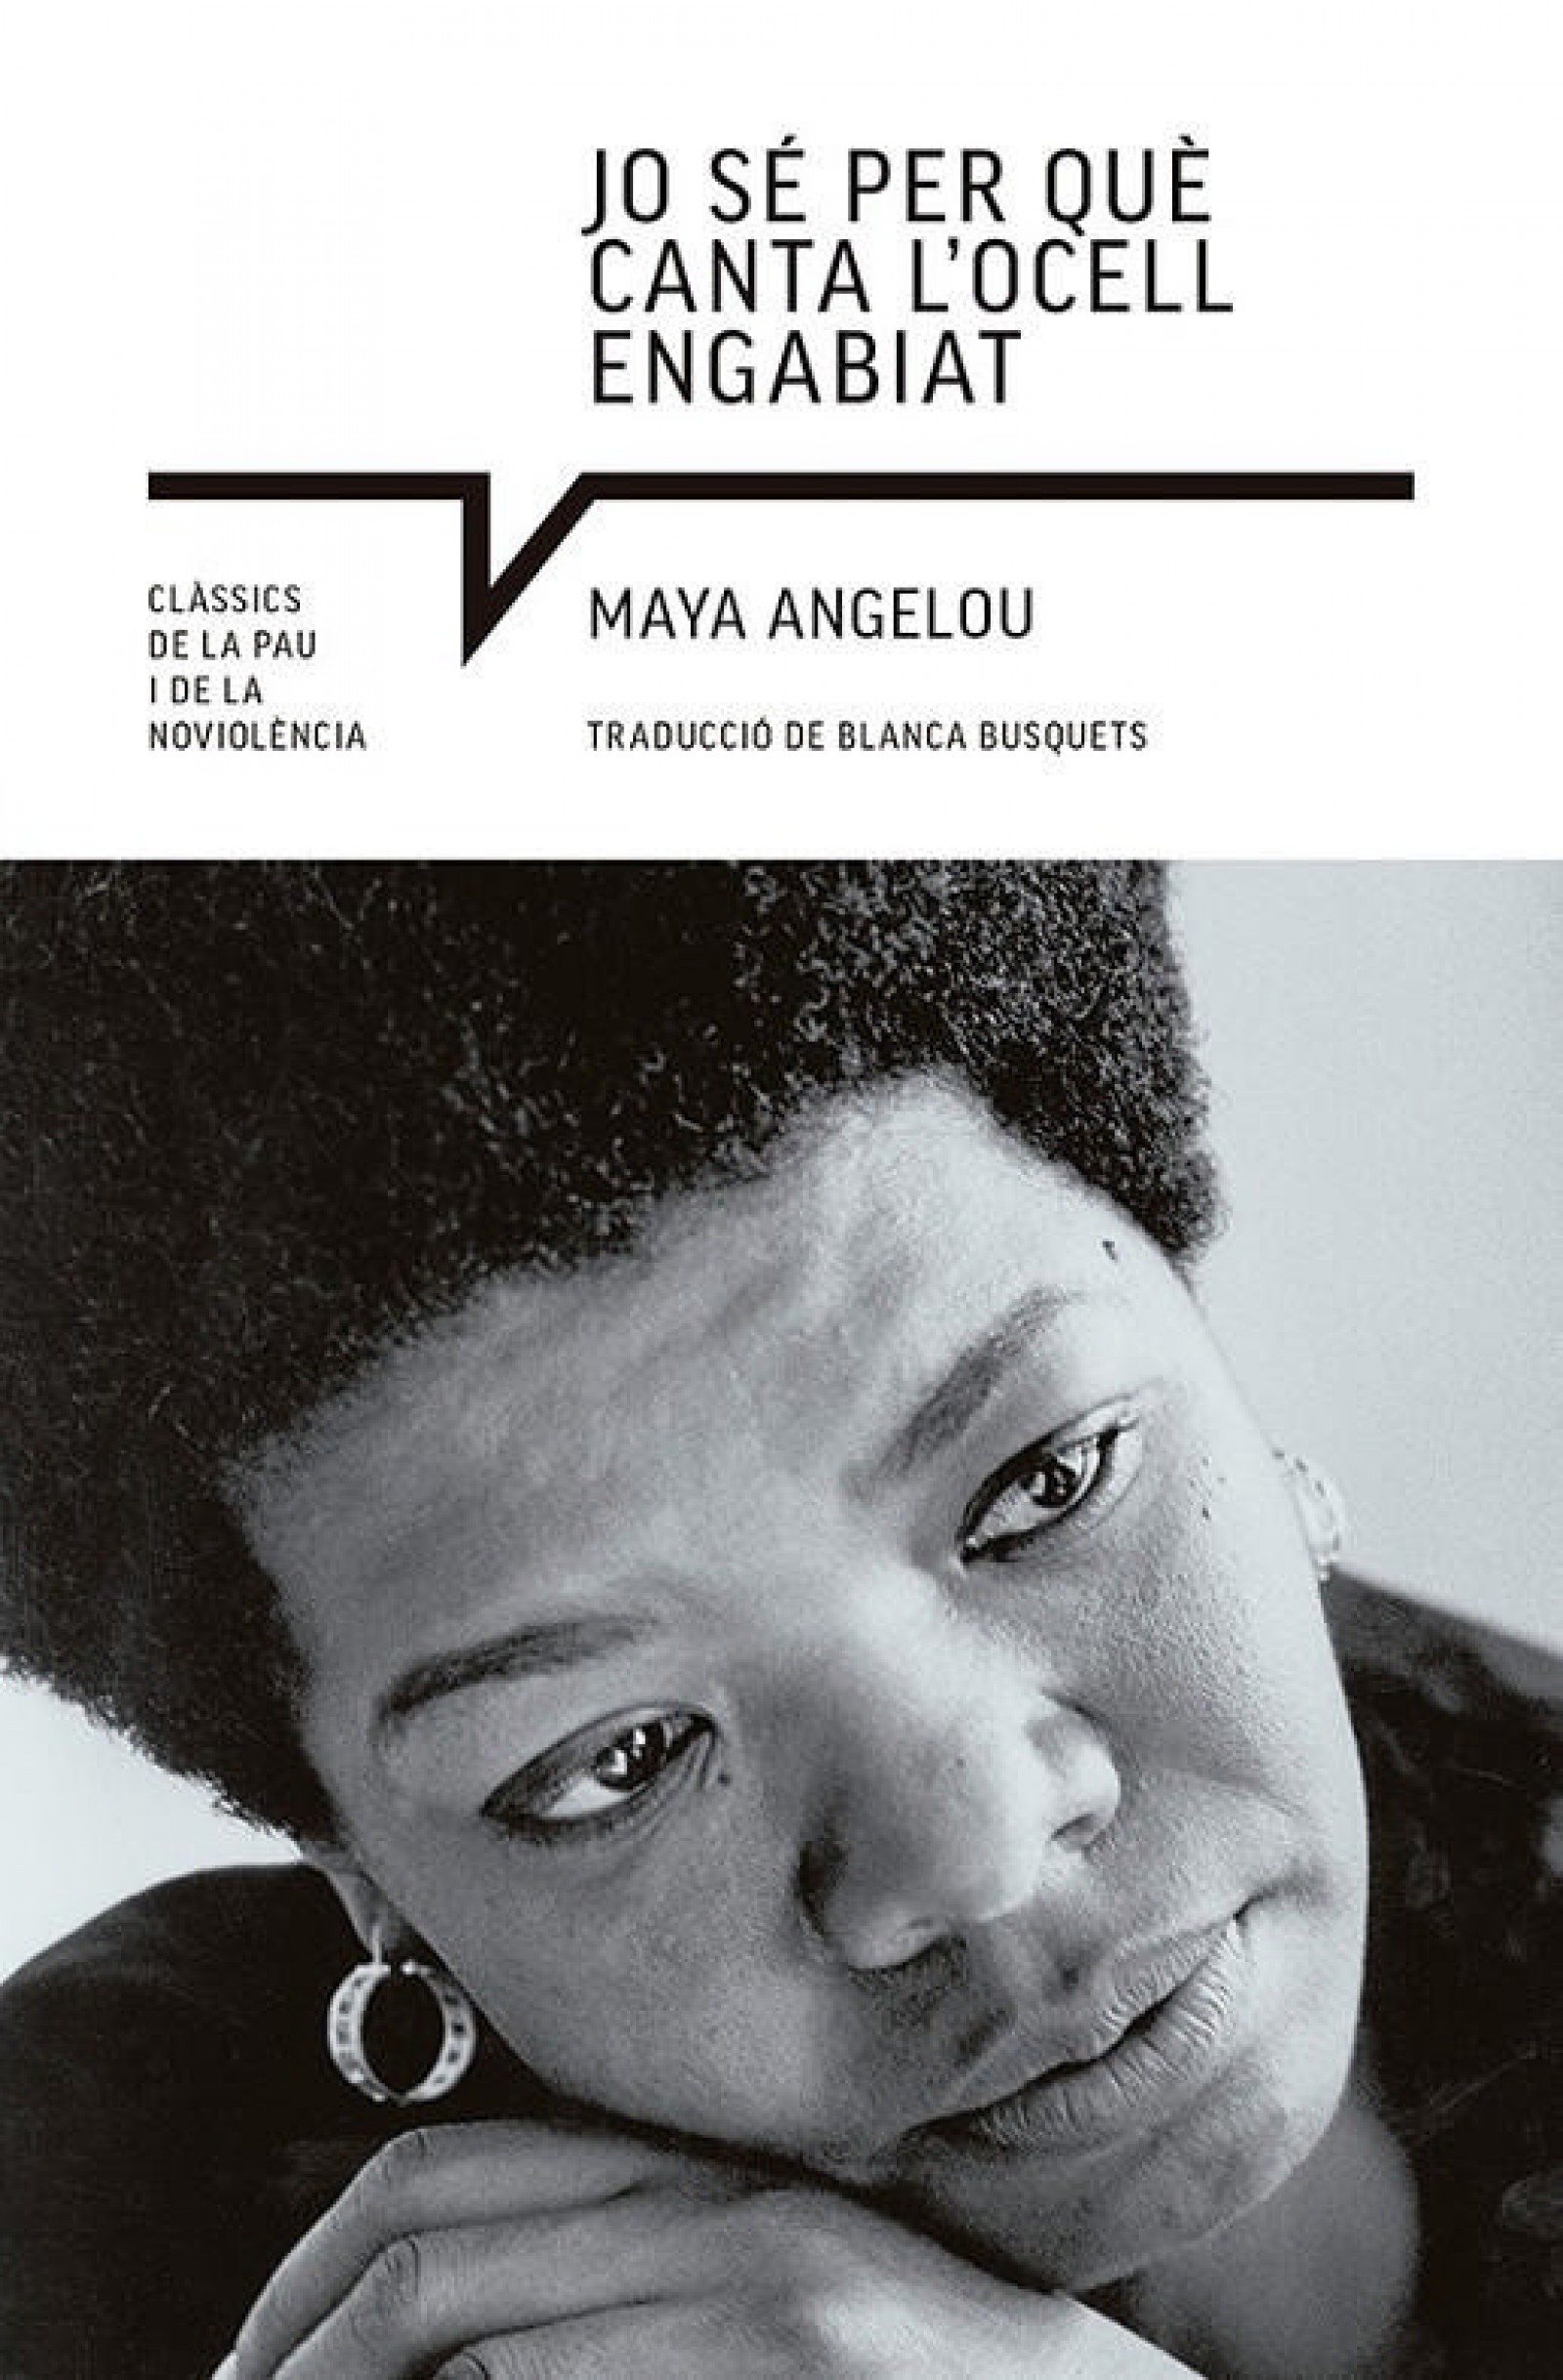 Coberta de 'Jo sé per què canta l'ocell engabiat' de Maya Angelou